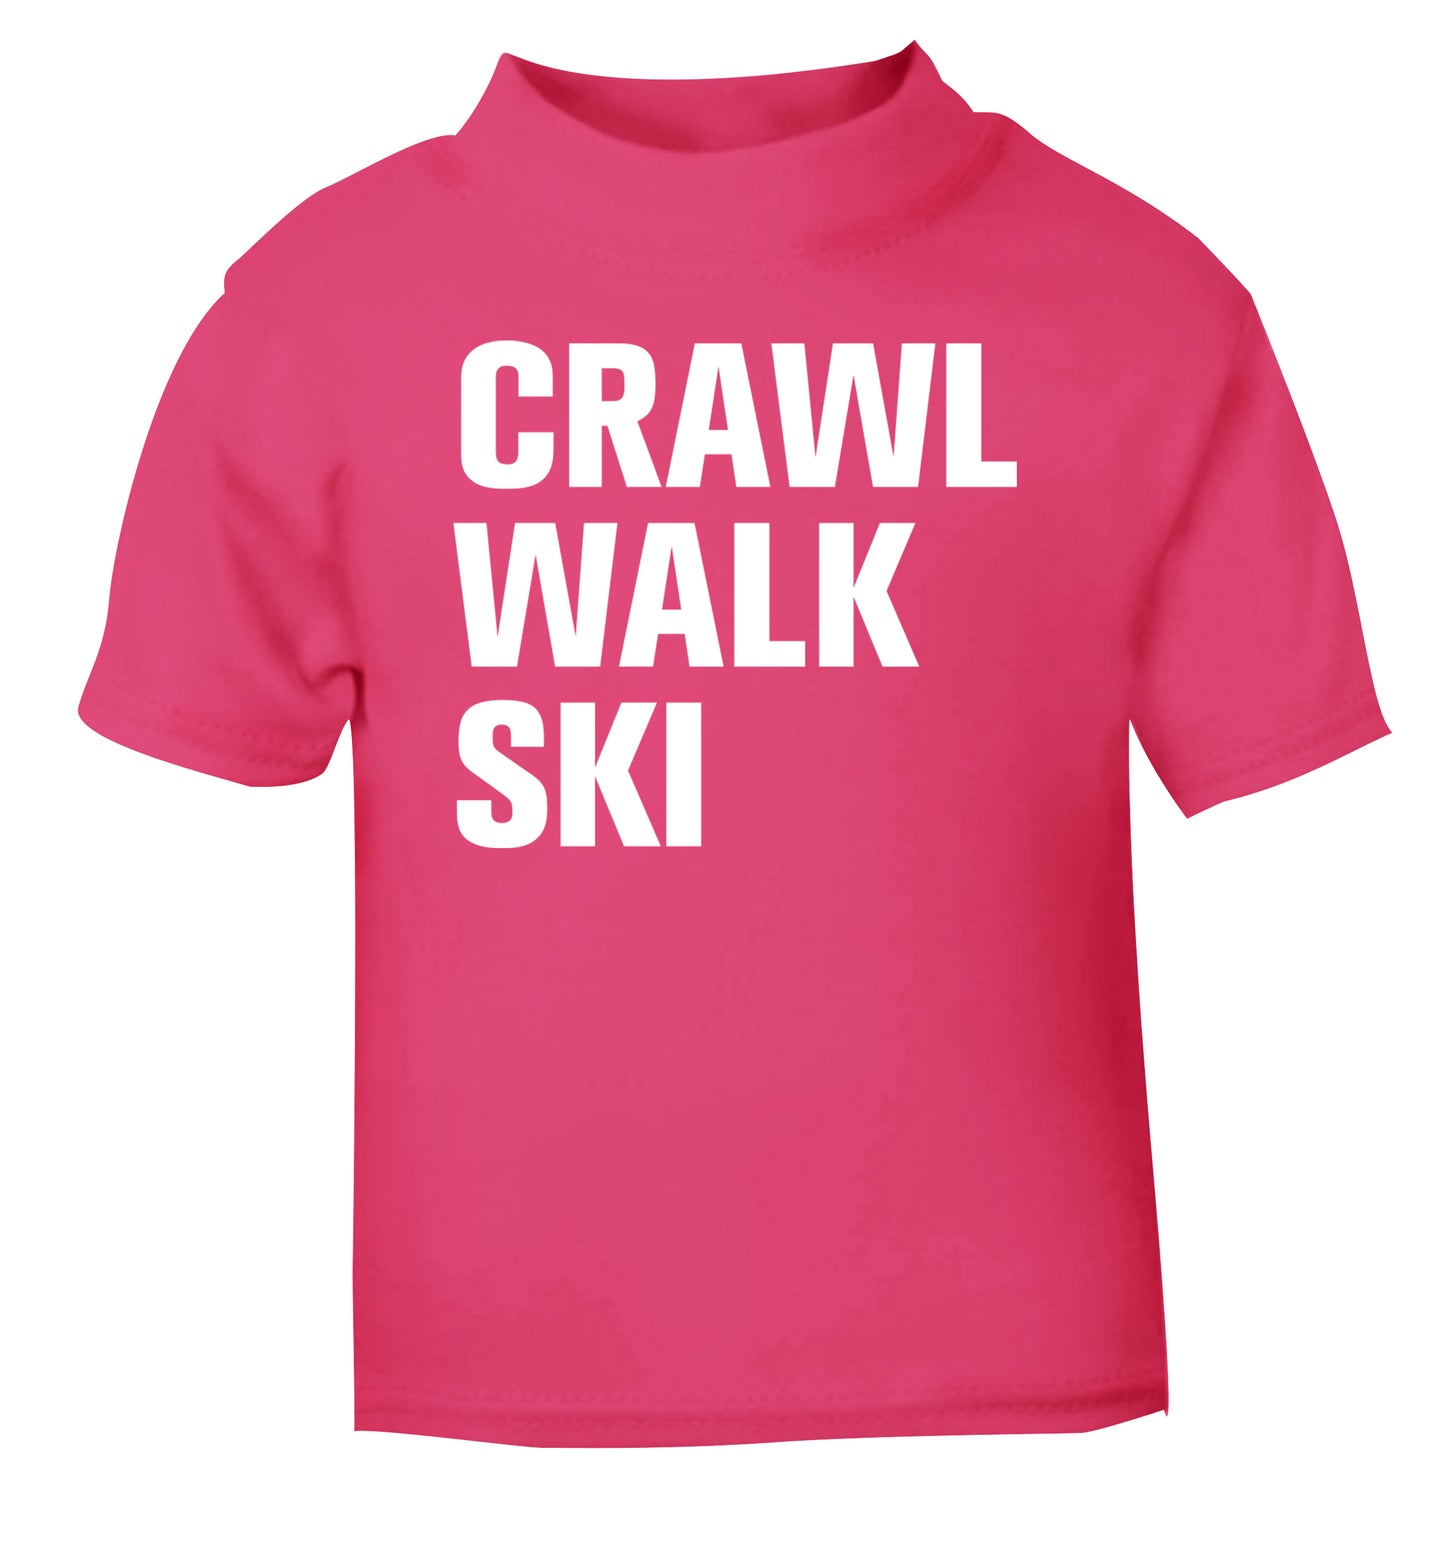 Crawl walk ski pink Baby Toddler Tshirt 2 Years